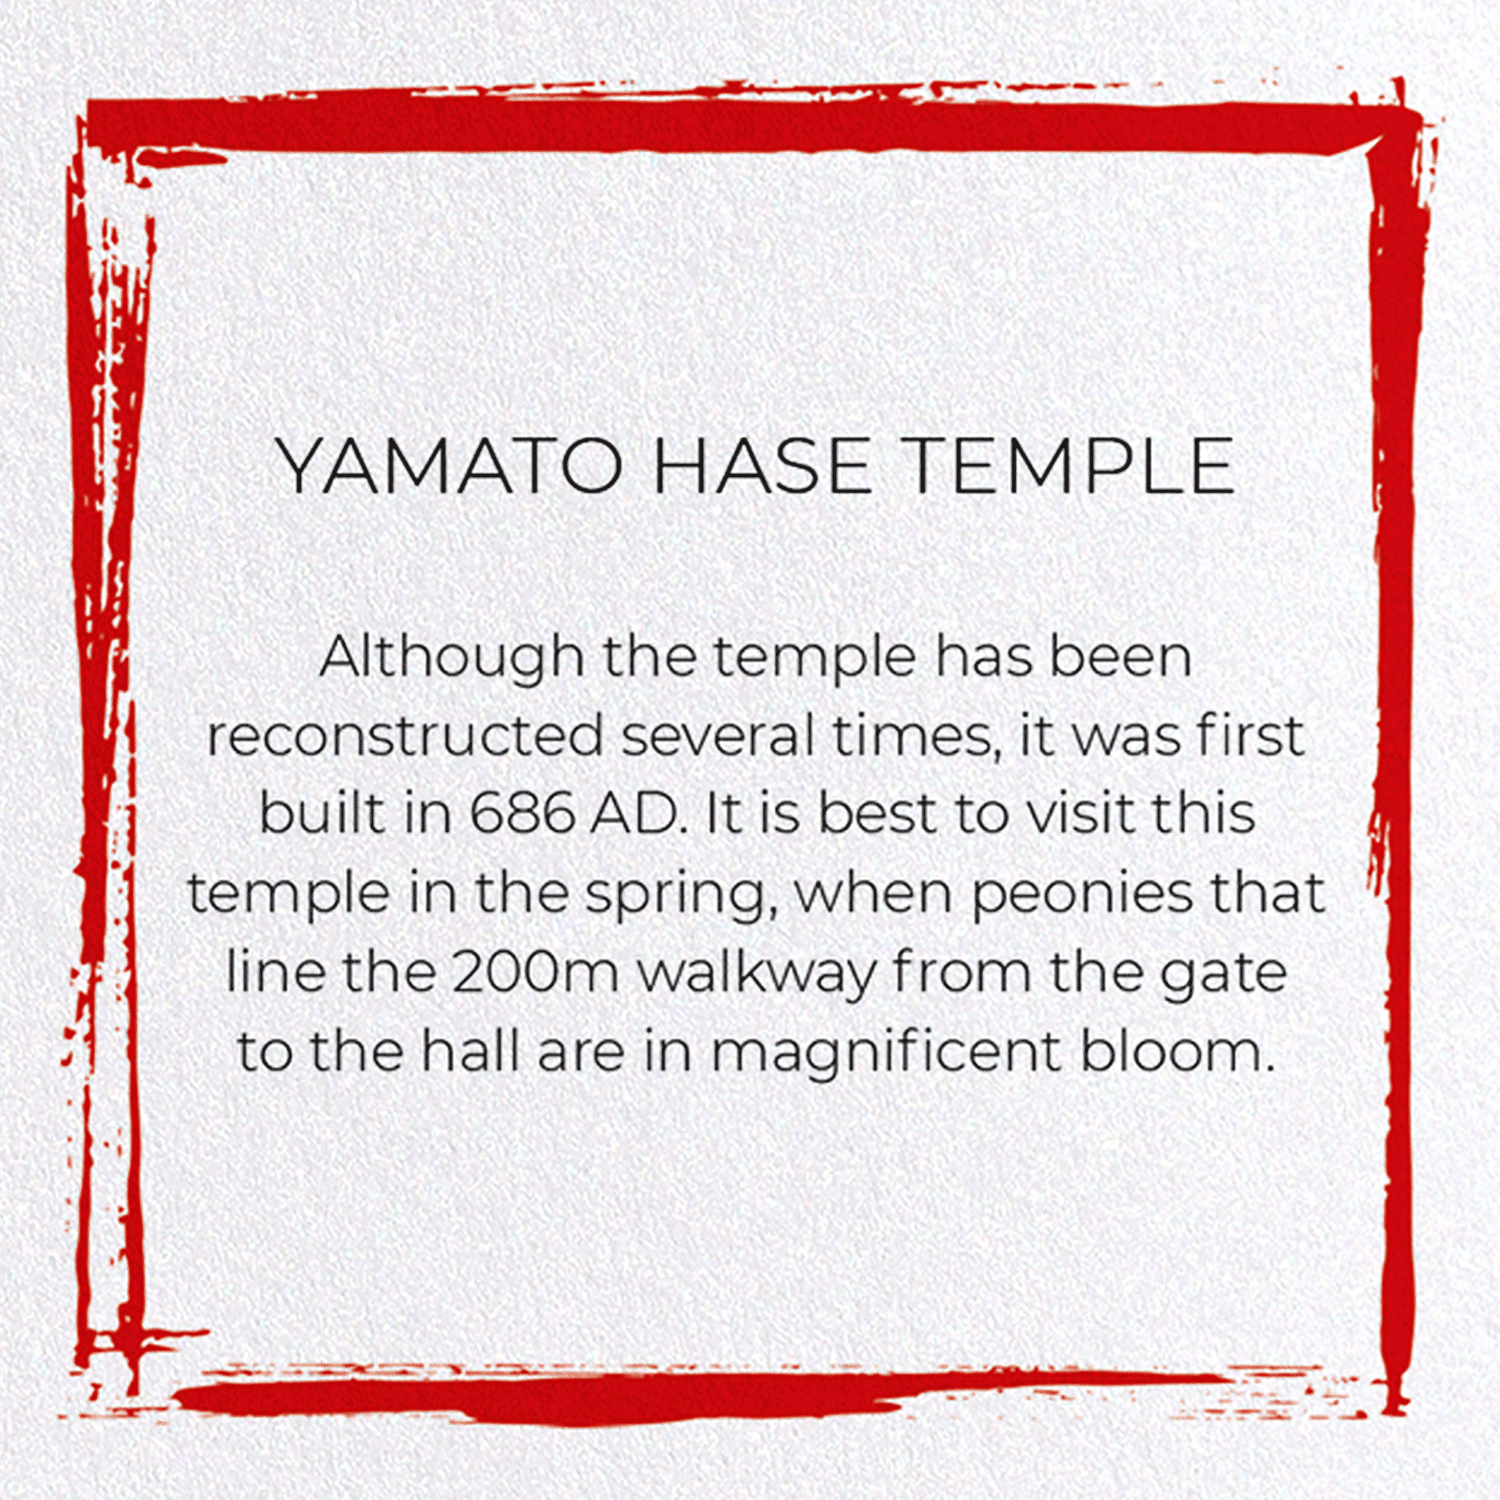 YAMATO HASE TEMPLE